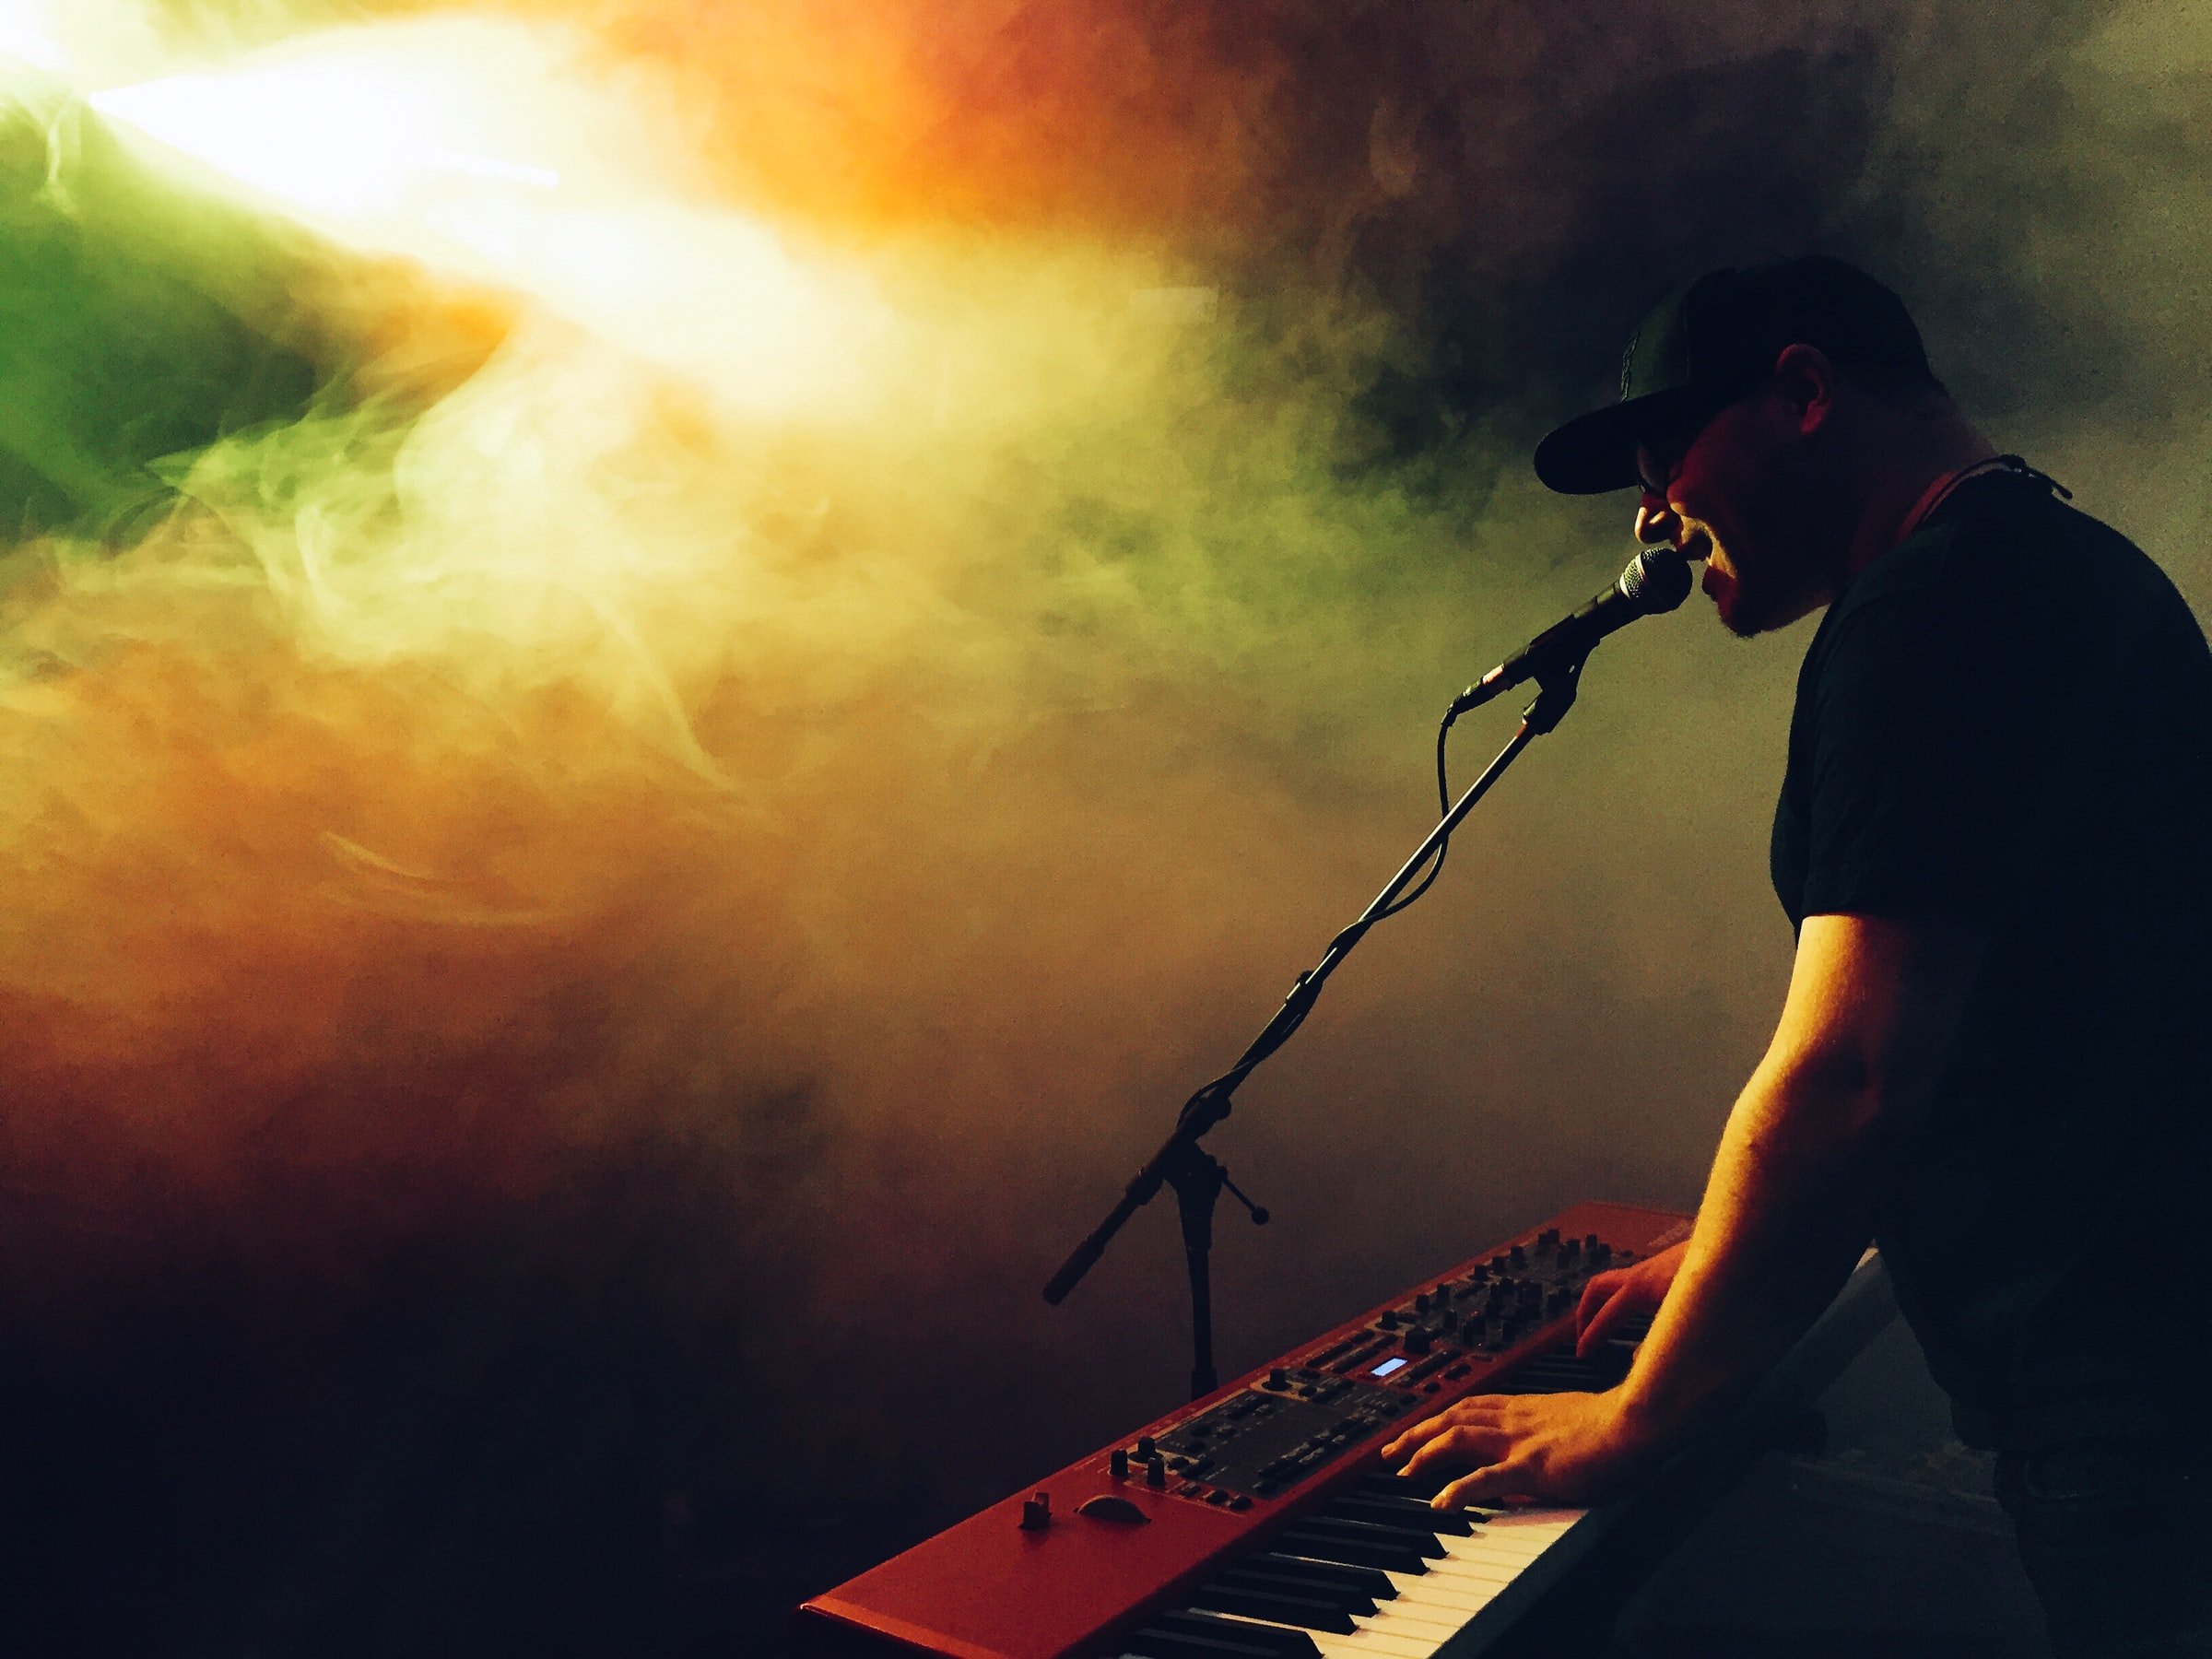 Man playing keyboard and singing in colorful smoke.